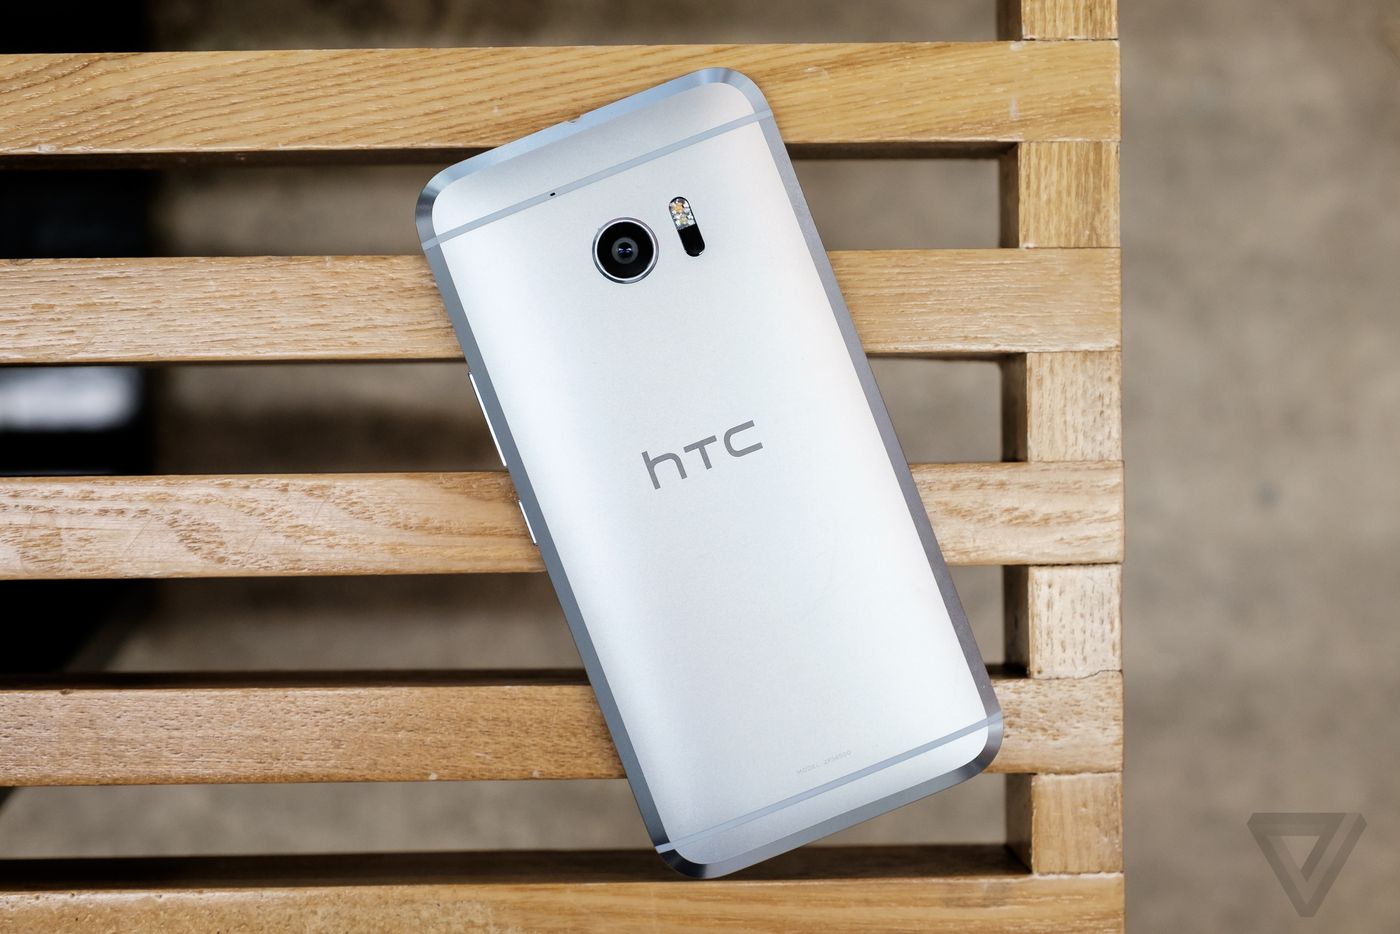 HTC 10 ra mắt: Vẫn còn loa đôi, camera đổi mới, thiết kế pha trộn